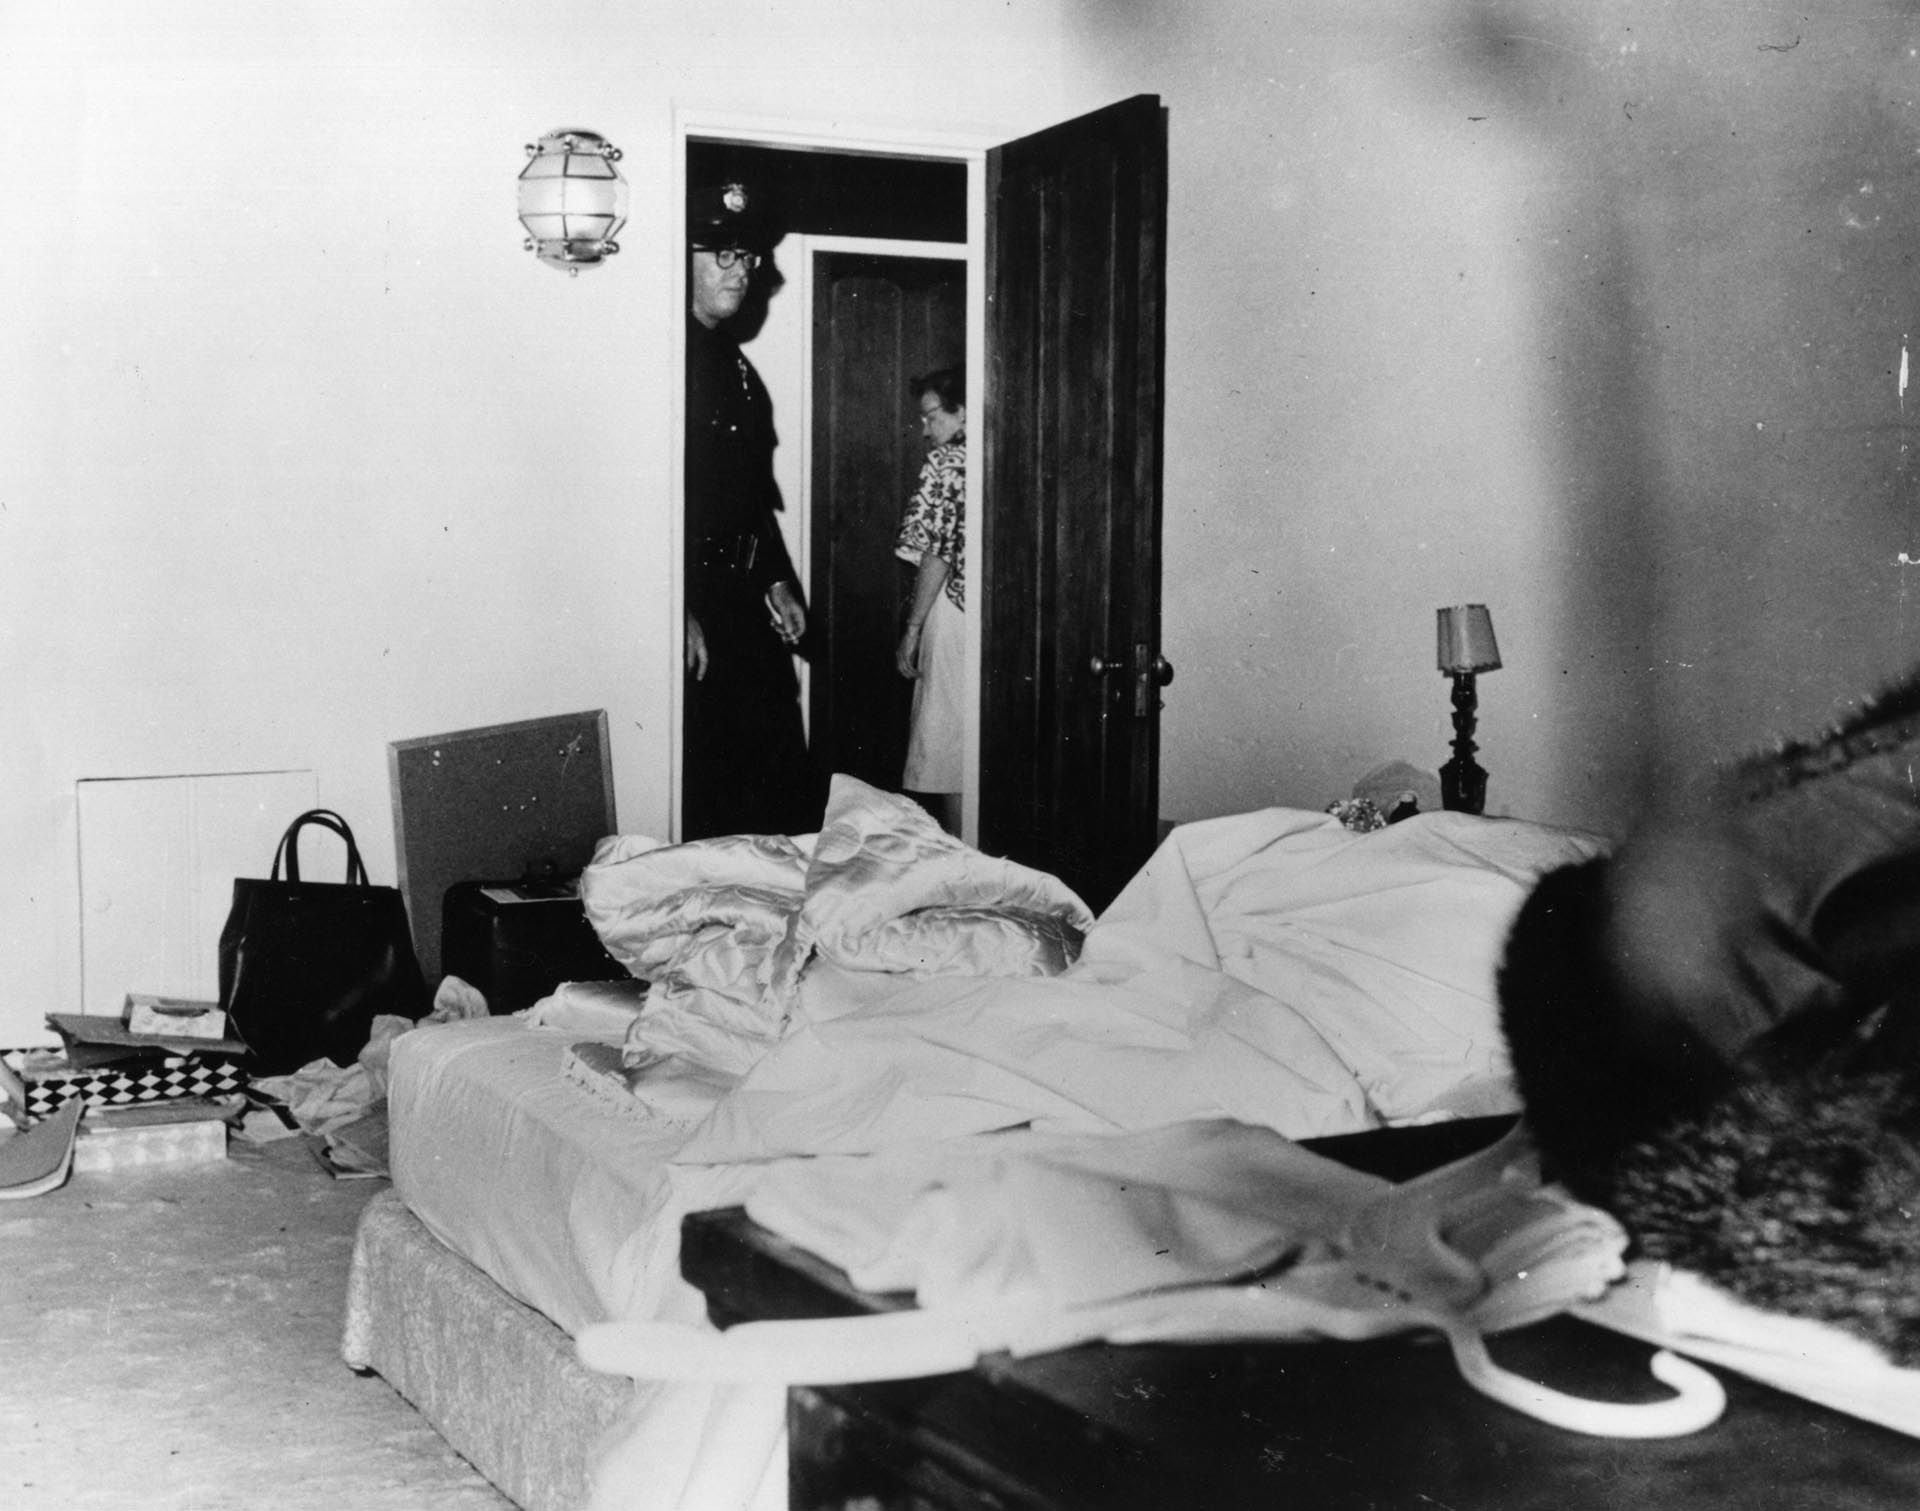 La cama donde fue hallada muerta Marilyn Monroe. Siempre se sospechó que la escena había sido alterada antes de la llegada de la policía (Photo by E. Murray/Fox Photos/Getty Images)